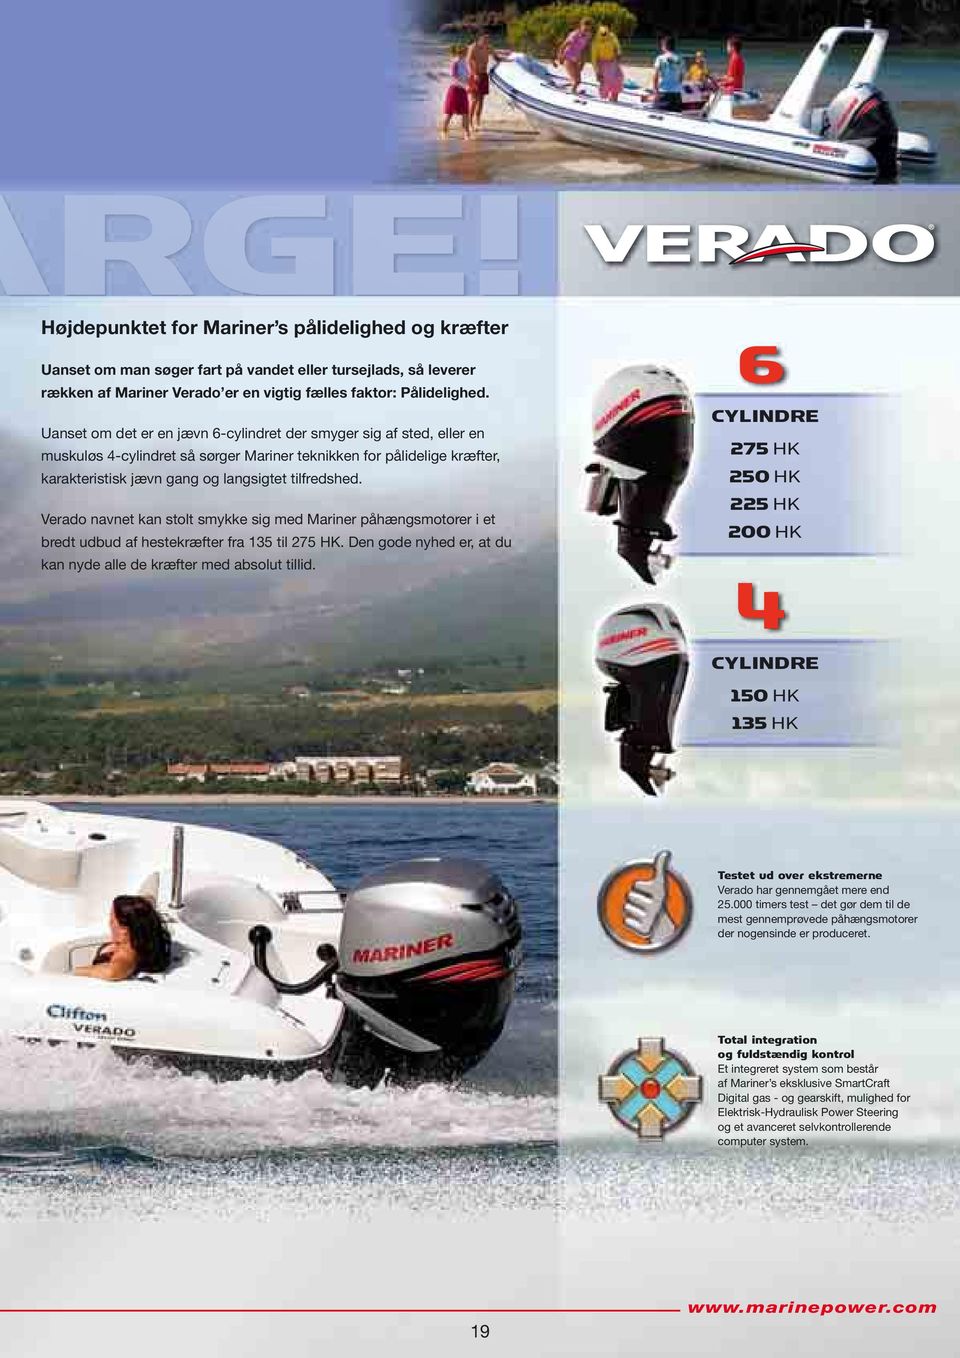 Verado navnet kan stolt smykke sig med Mariner påhængsmotorer i et bredt udbud af hestekræfter fra 135 til 275 HK. Den gode nyhed er, at du kan nyde alle de kræfter med absolut tillid.